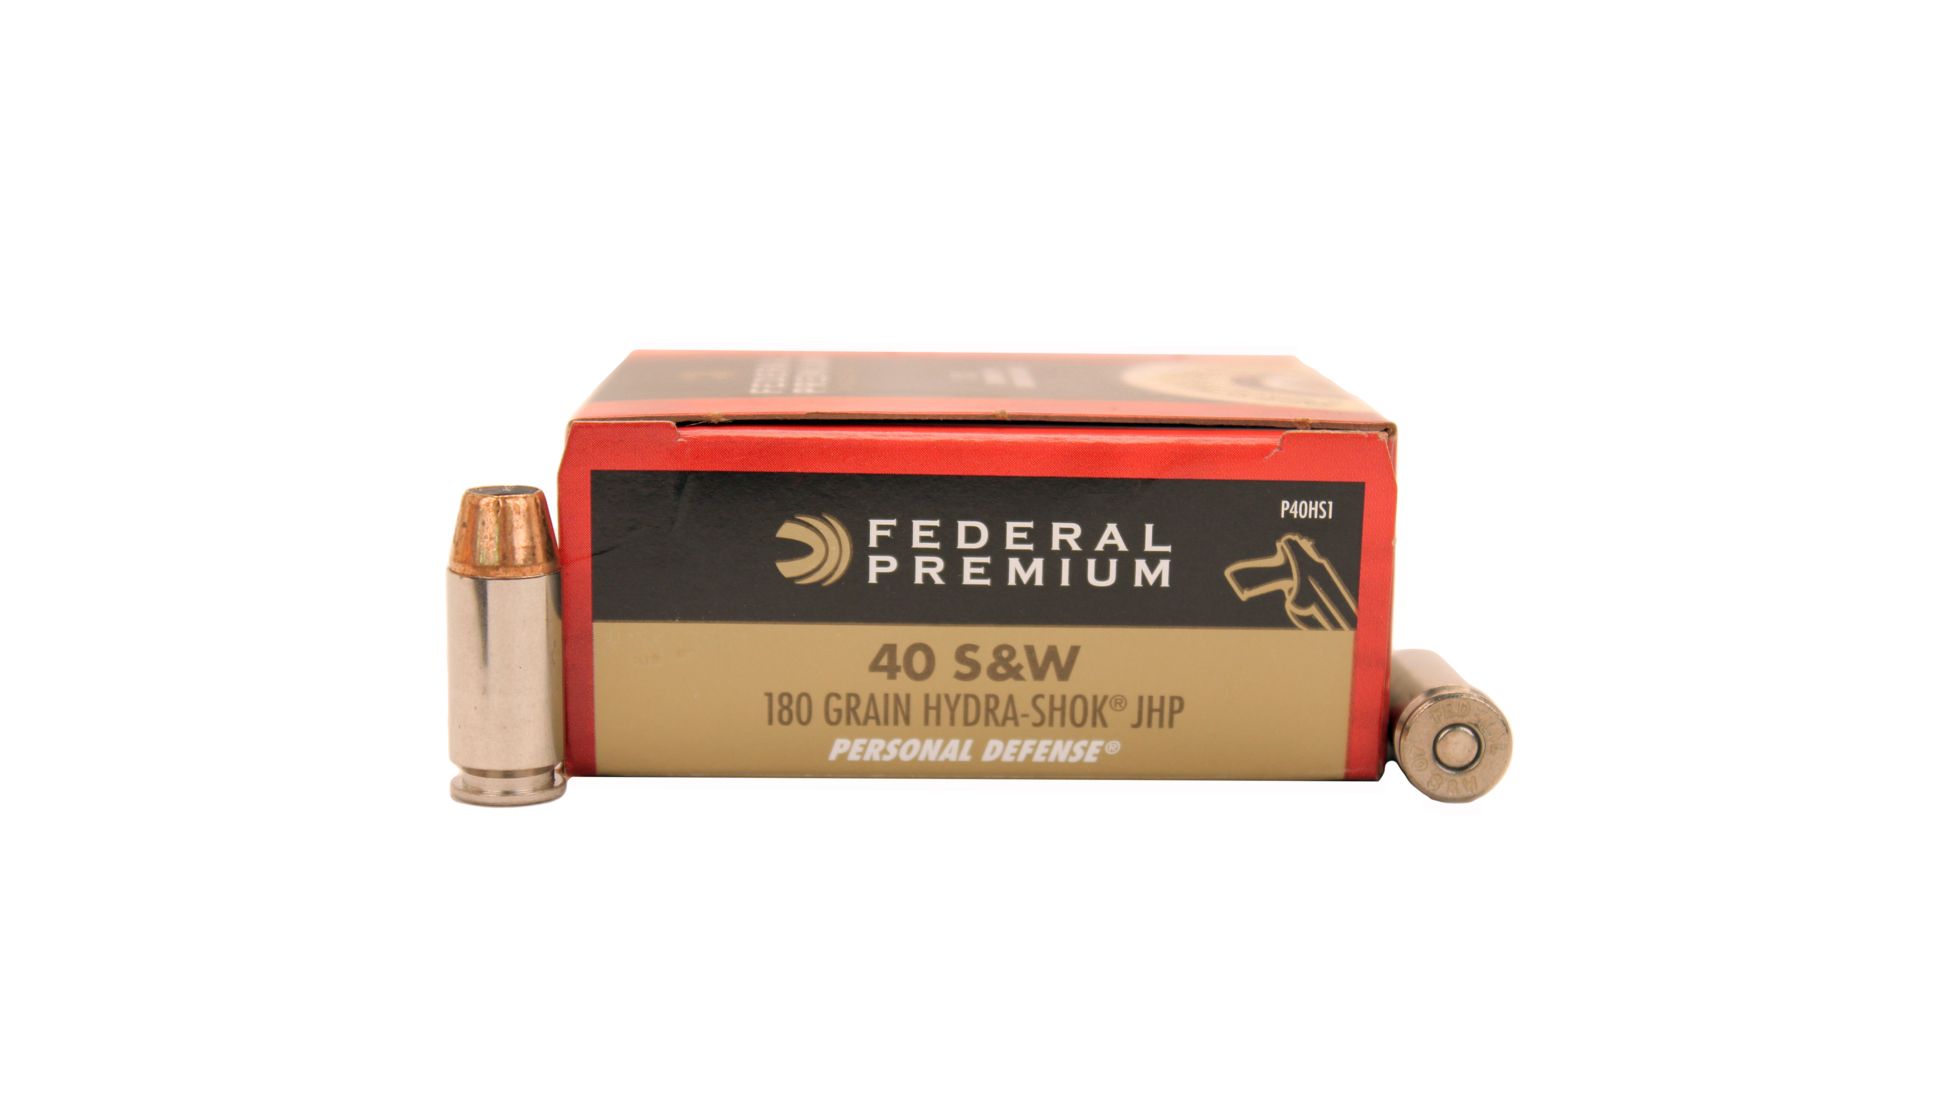 Federal Premium Centerfire Handgun Ammunition .40 S&W 180 grain Jacketed Hollow Point Brass Cased Centerfire Pistol Ammunition